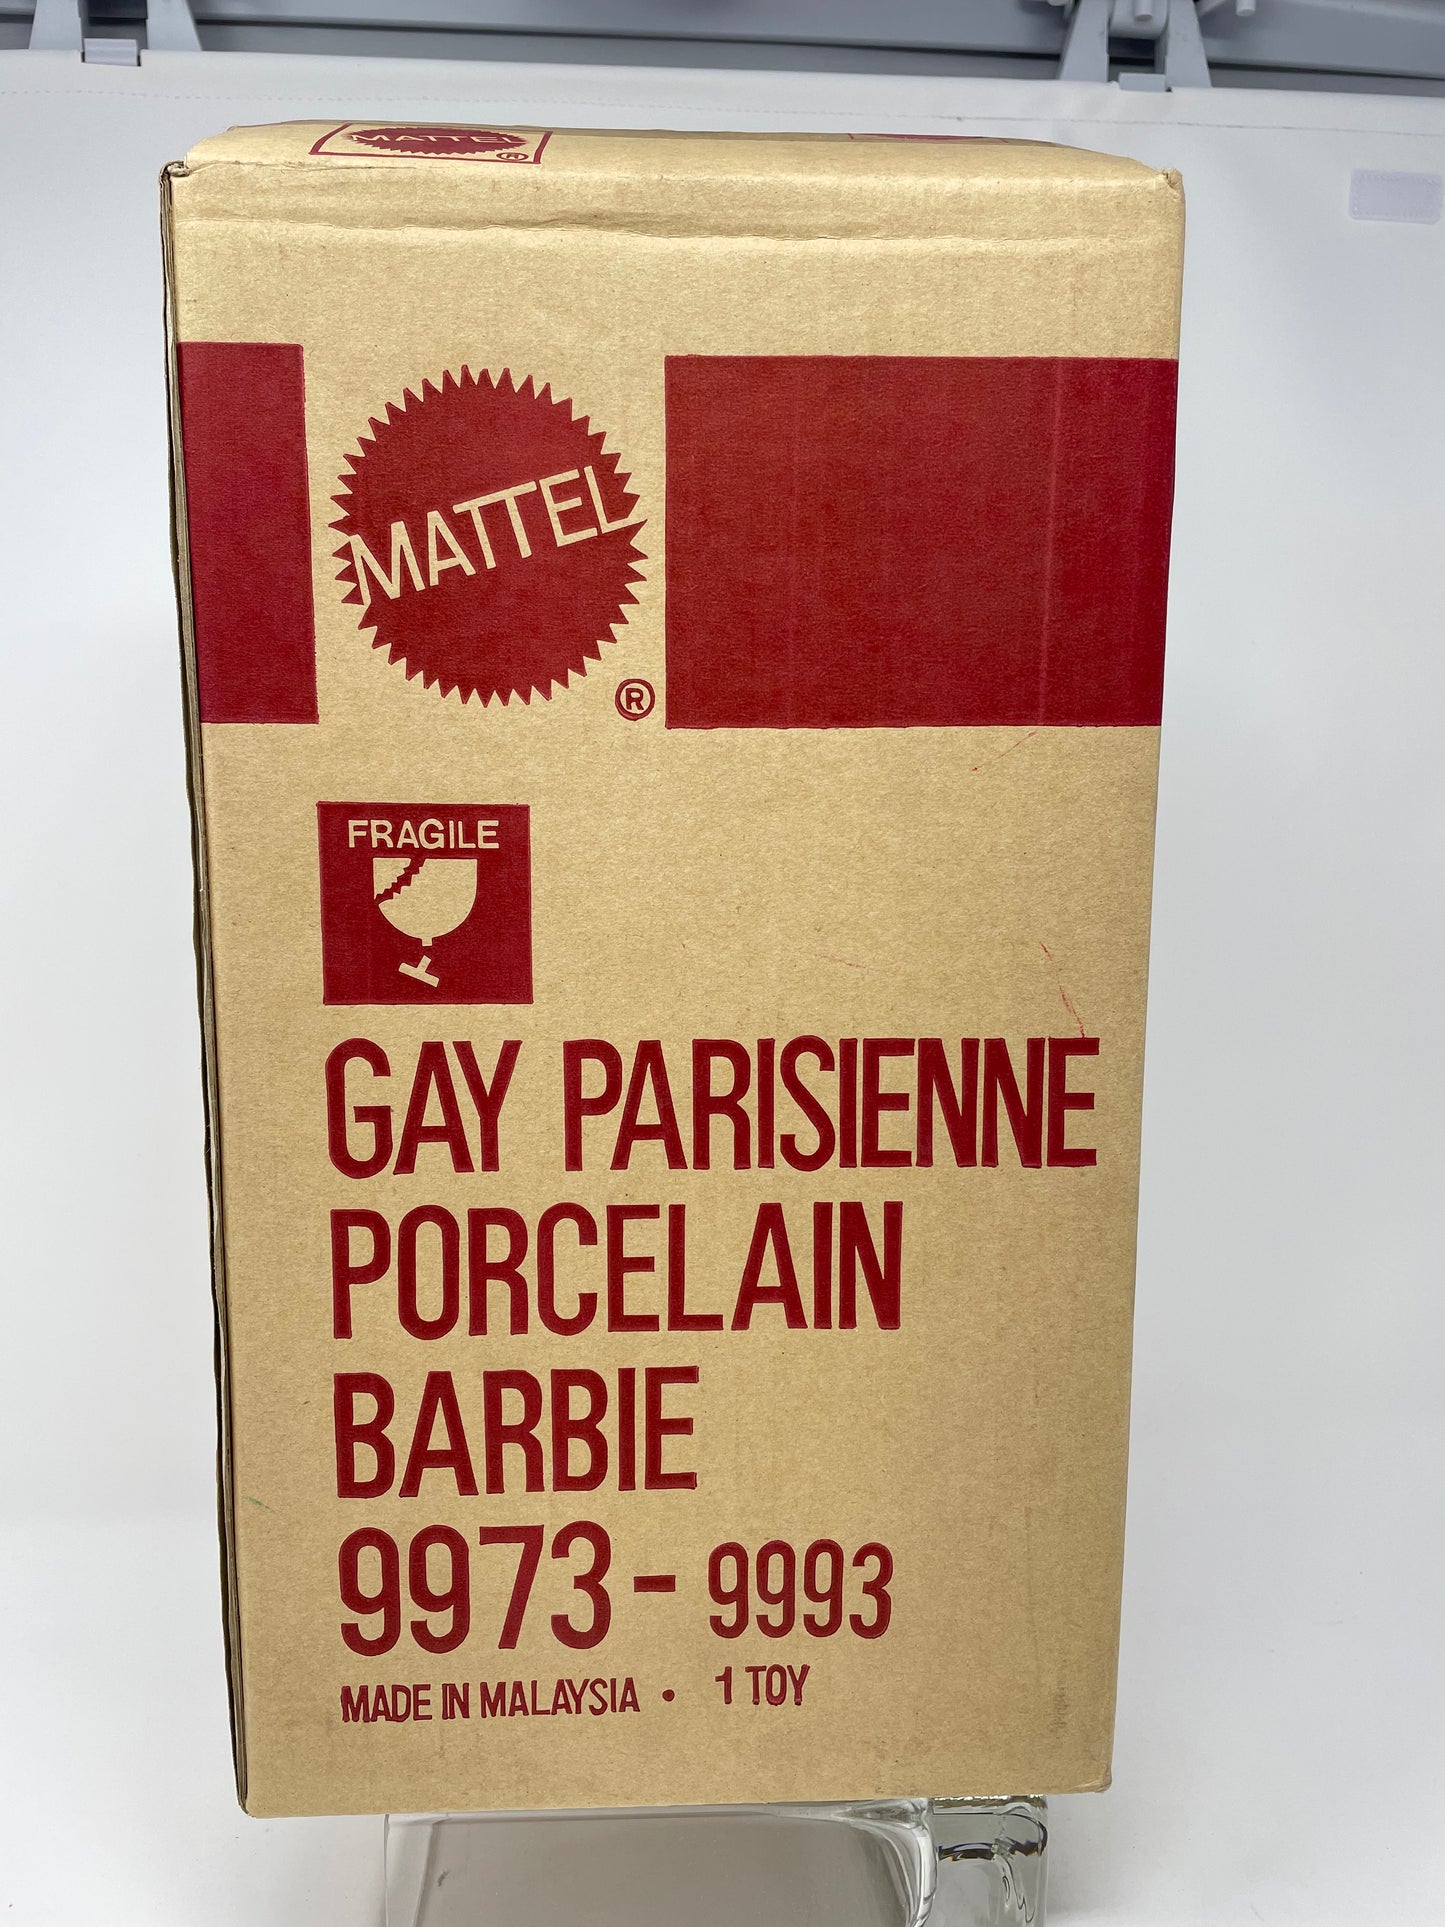 GAY PARISIENNE PORCELAIN BARBIE - #9973 - MATTEL 1991